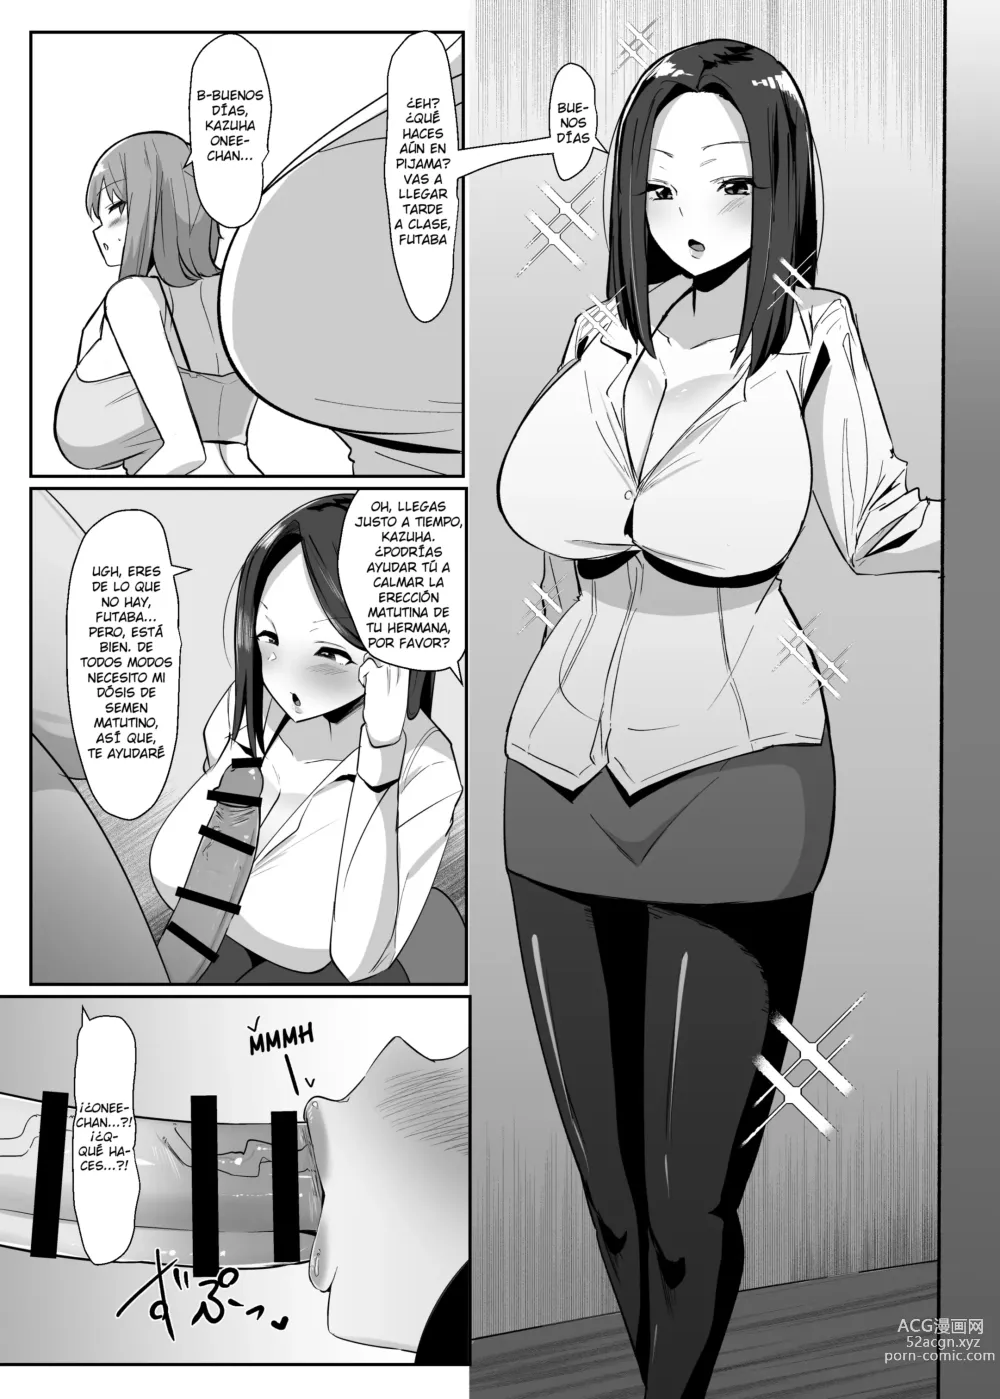 Page 4 of doujinshi ¡Un día me desperté y de repente hacer eyacular a las futanaris era lo más normal del mundo!